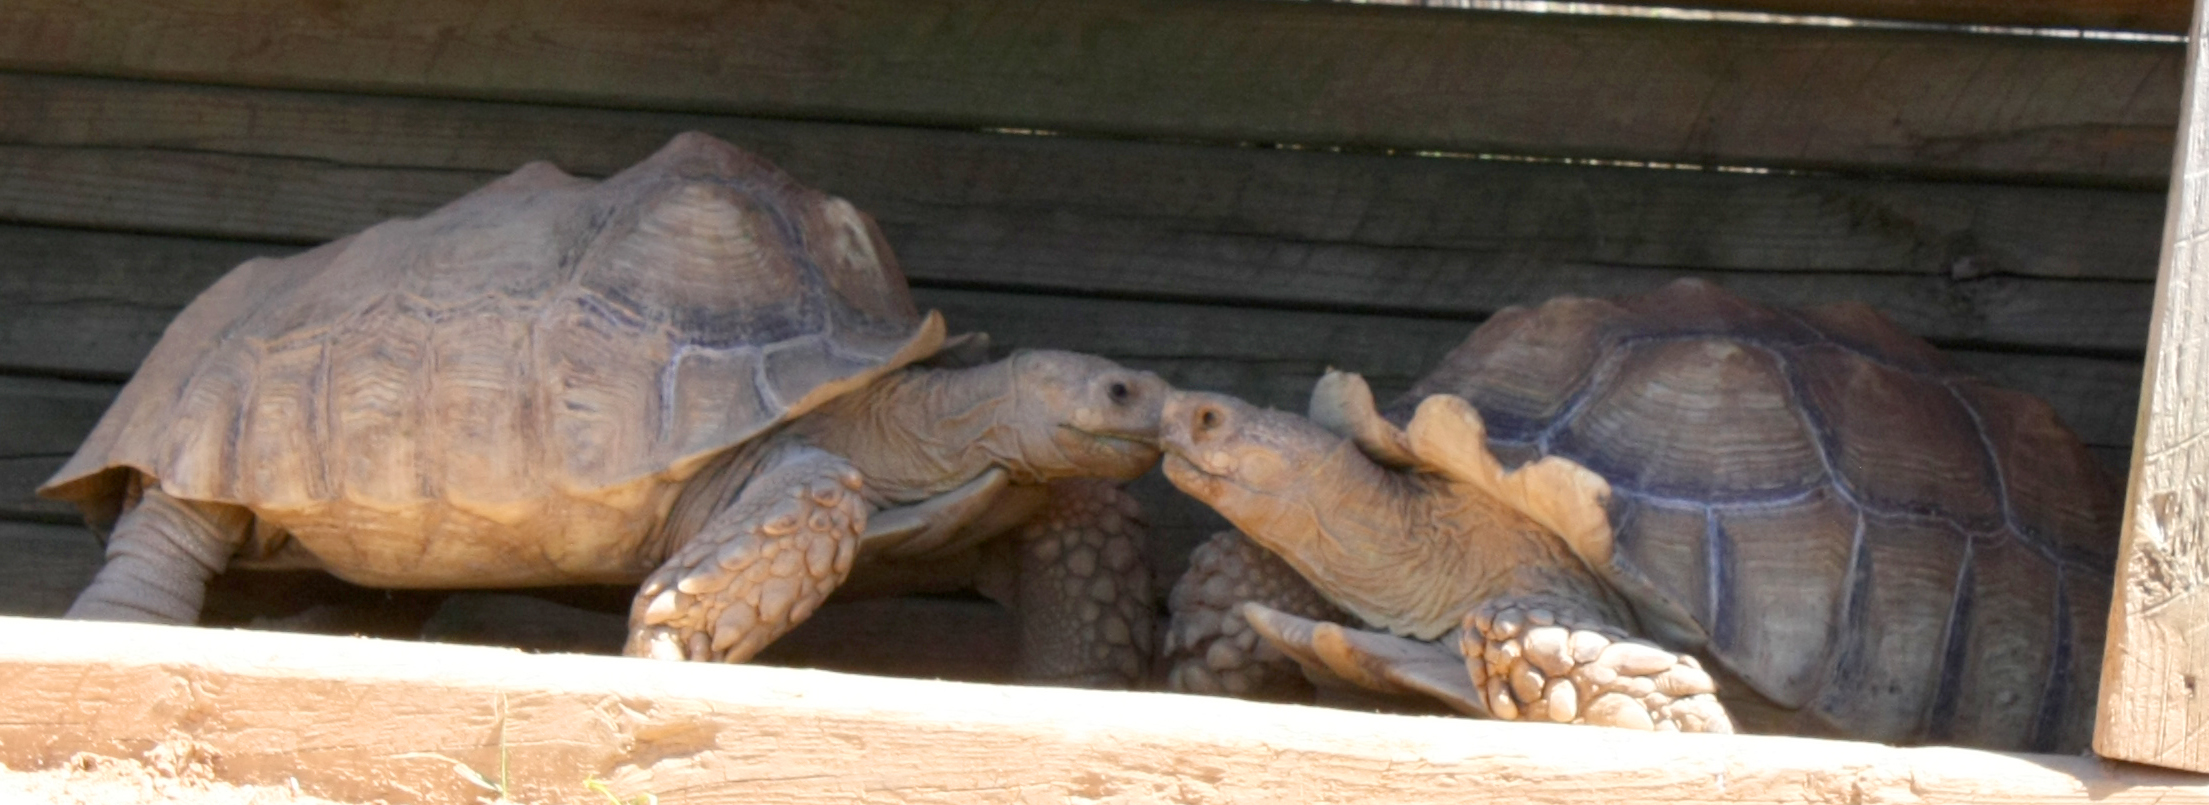 Creation Kingdom Zoo tortoises